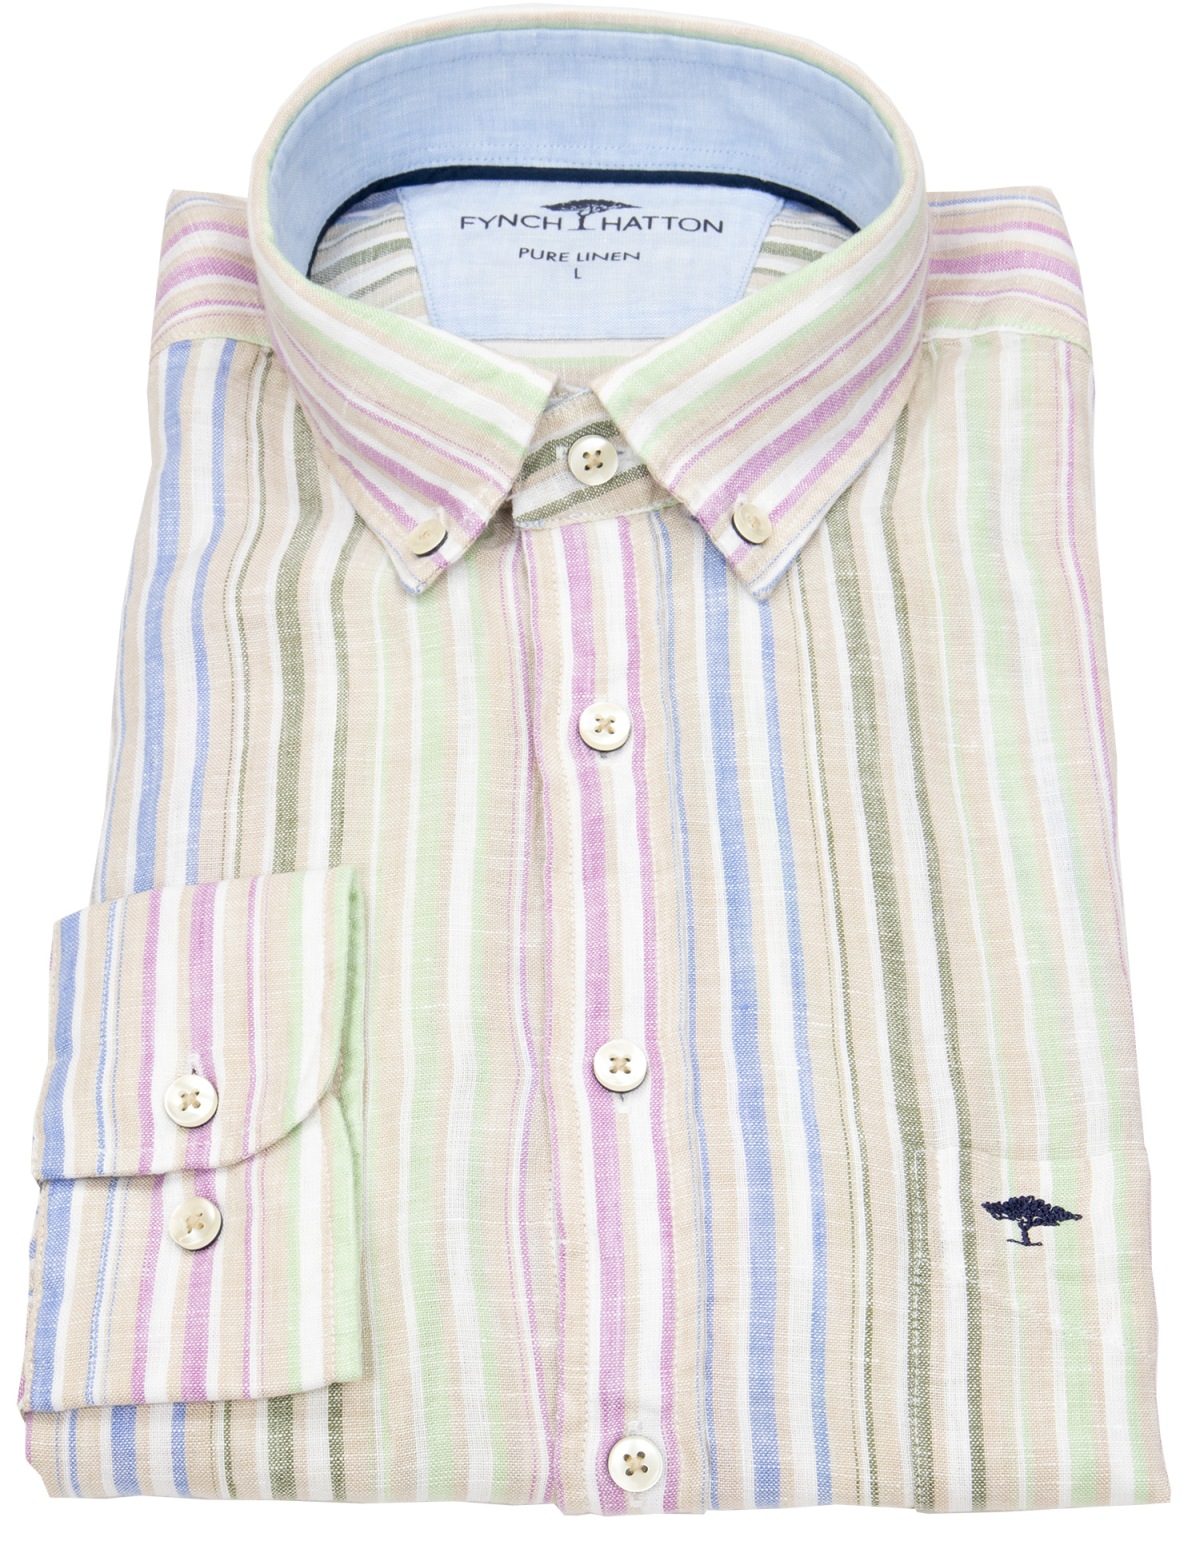 Fynch-Hatton - Leinenhemd - Casual Fit - Button Down - Streifen - mehrfarbig